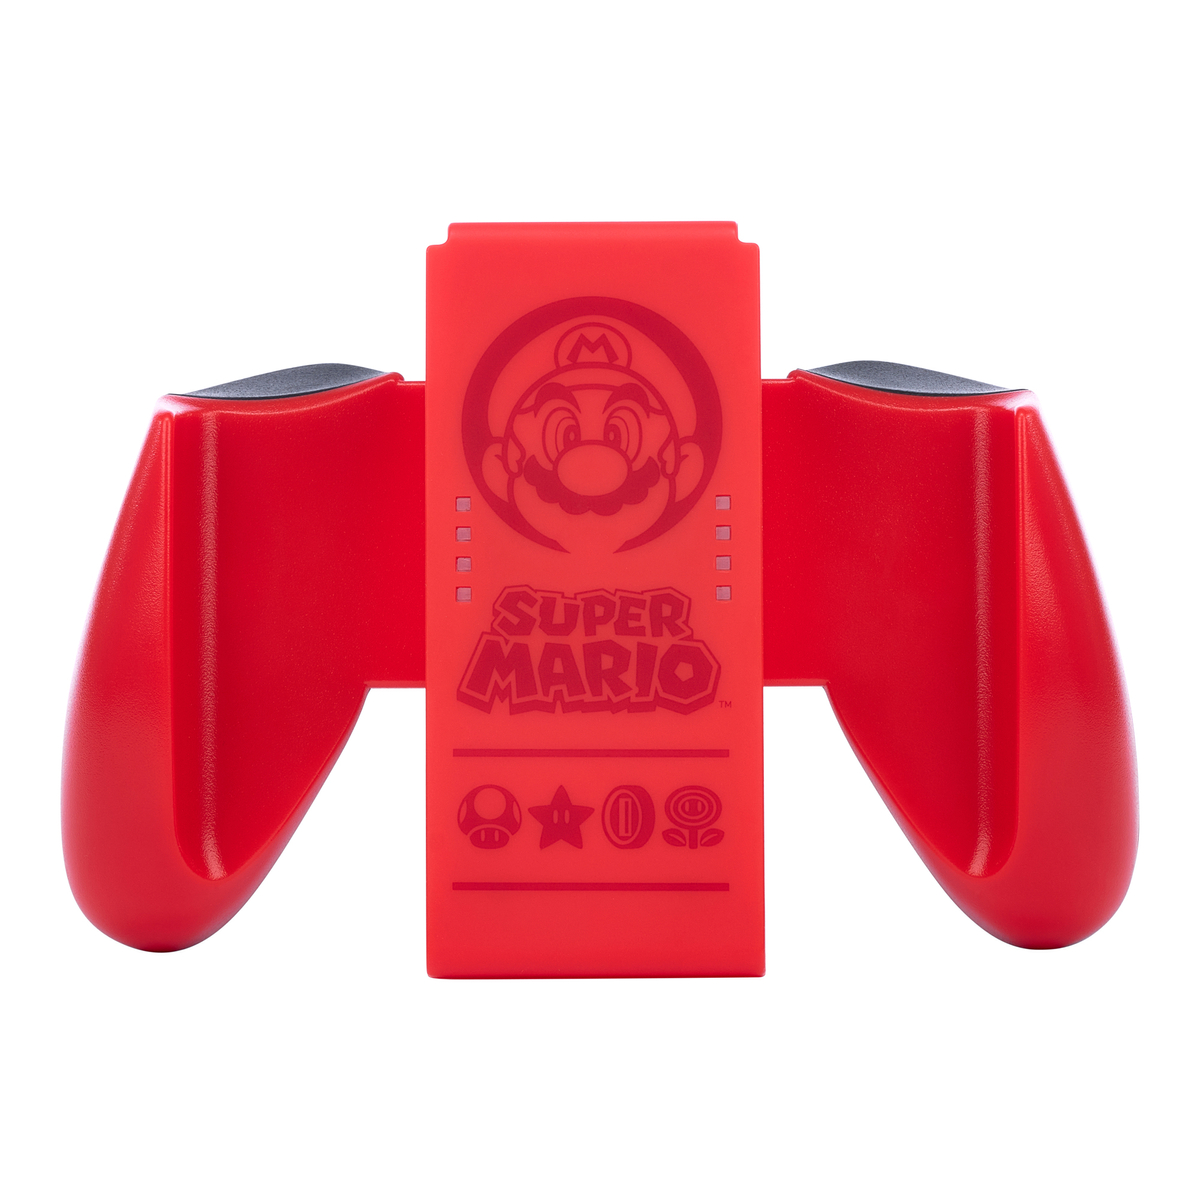 Joy-Con Comfort Grip - Super Mario Red